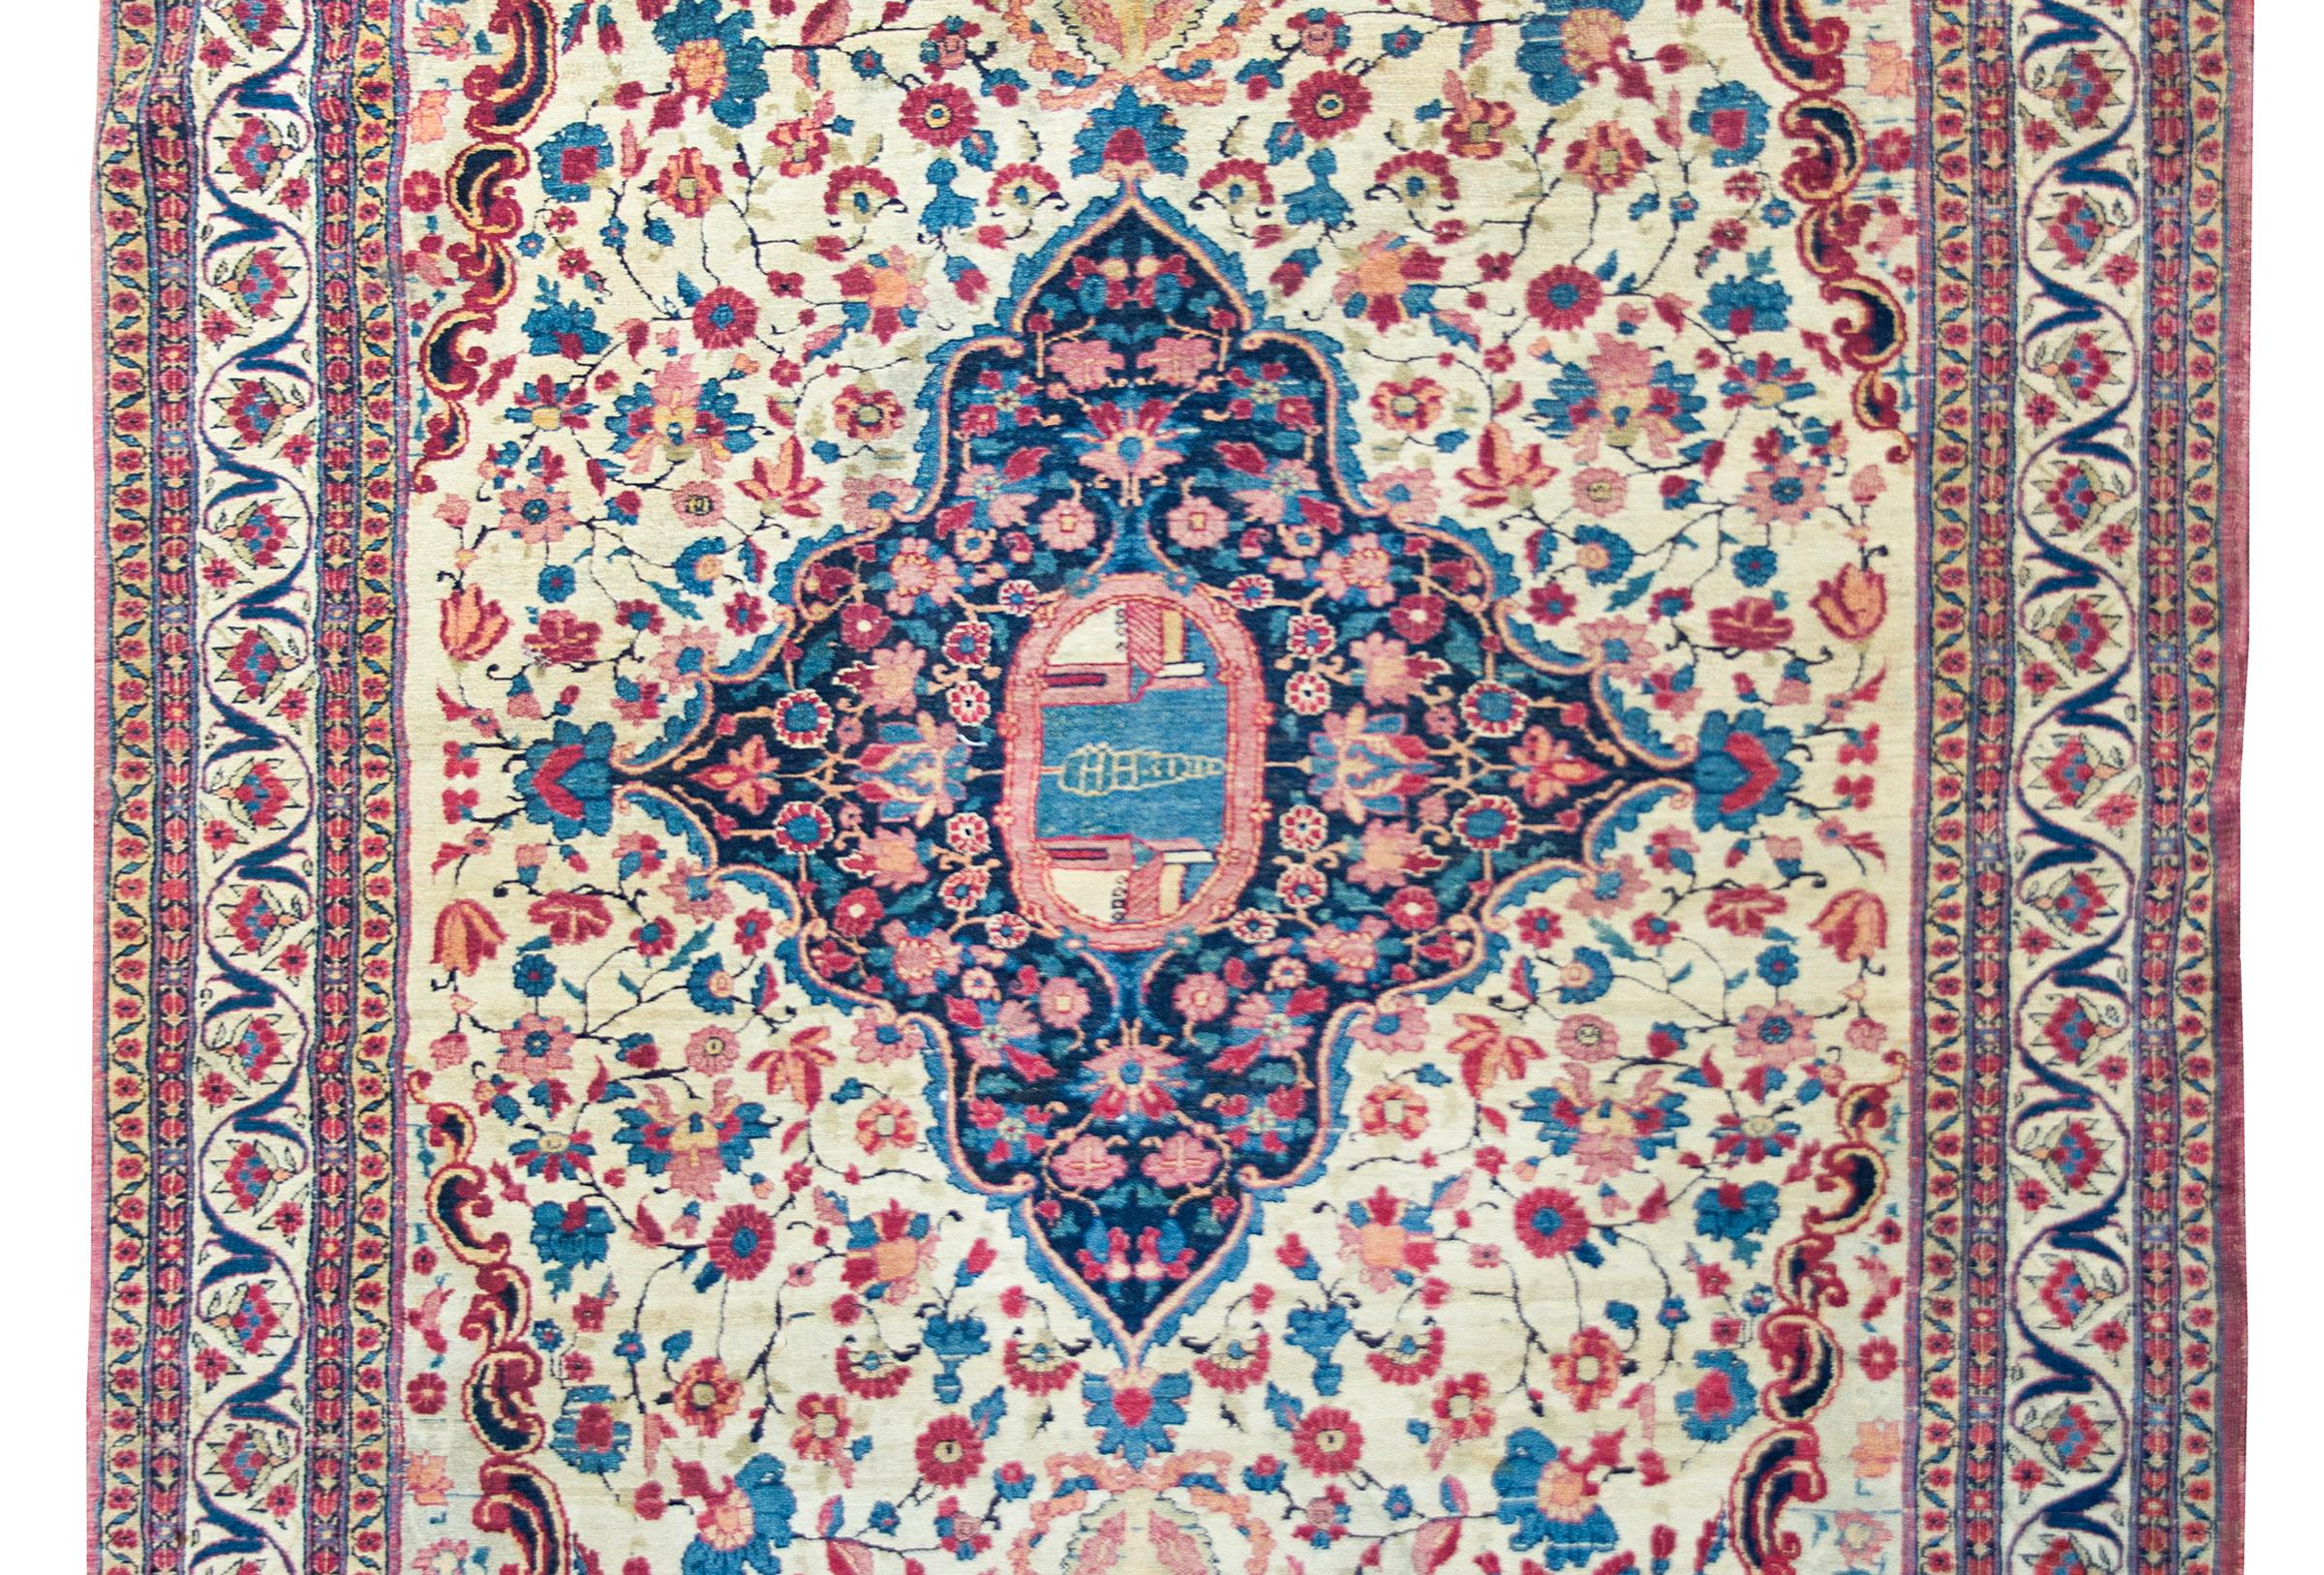 Un incroyable tapis persan de Téhéran du début du 20e siècle avec un grand médaillon central représentant un seul cyprès entre deux bâtiments vivant au milieu d'un champ de fleurs, le tout entouré d'une large bordure avec des fleurs plus stylisées